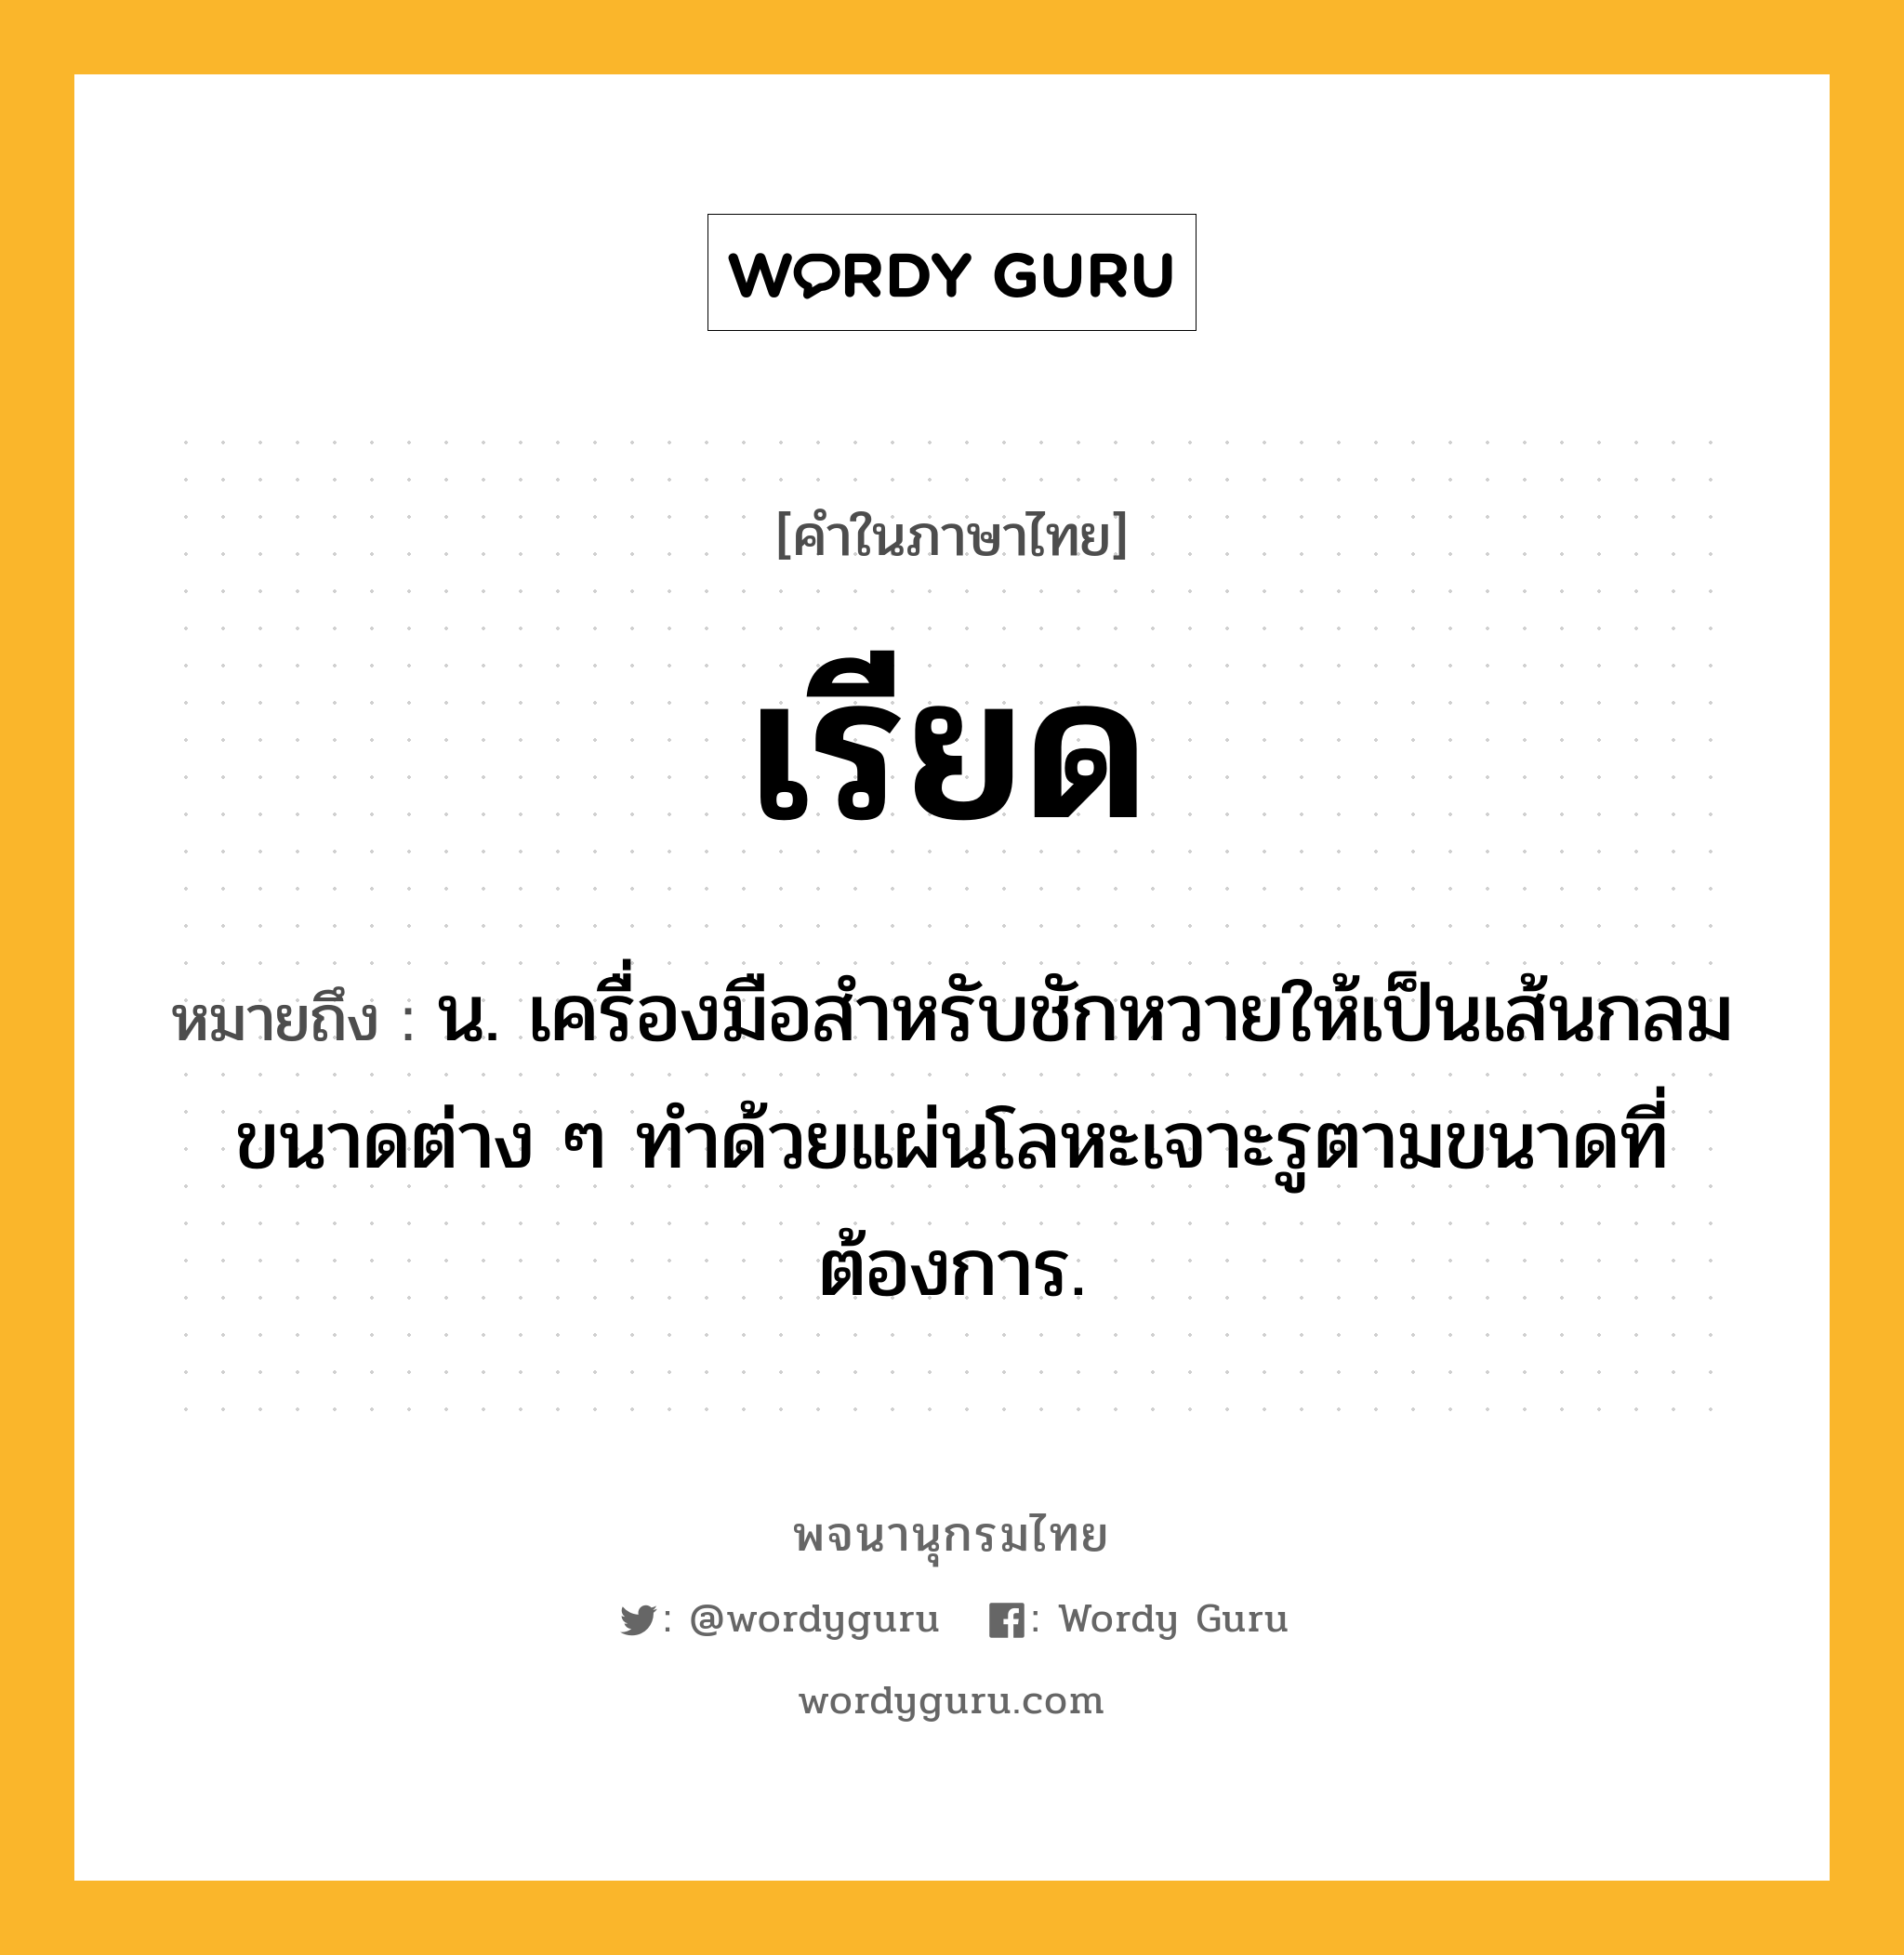 เรียด หมายถึงอะไร?, คำในภาษาไทย เรียด หมายถึง น. เครื่องมือสำหรับชักหวายให้เป็นเส้นกลมขนาดต่าง ๆ ทำด้วยแผ่นโลหะเจาะรูตามขนาดที่ต้องการ.